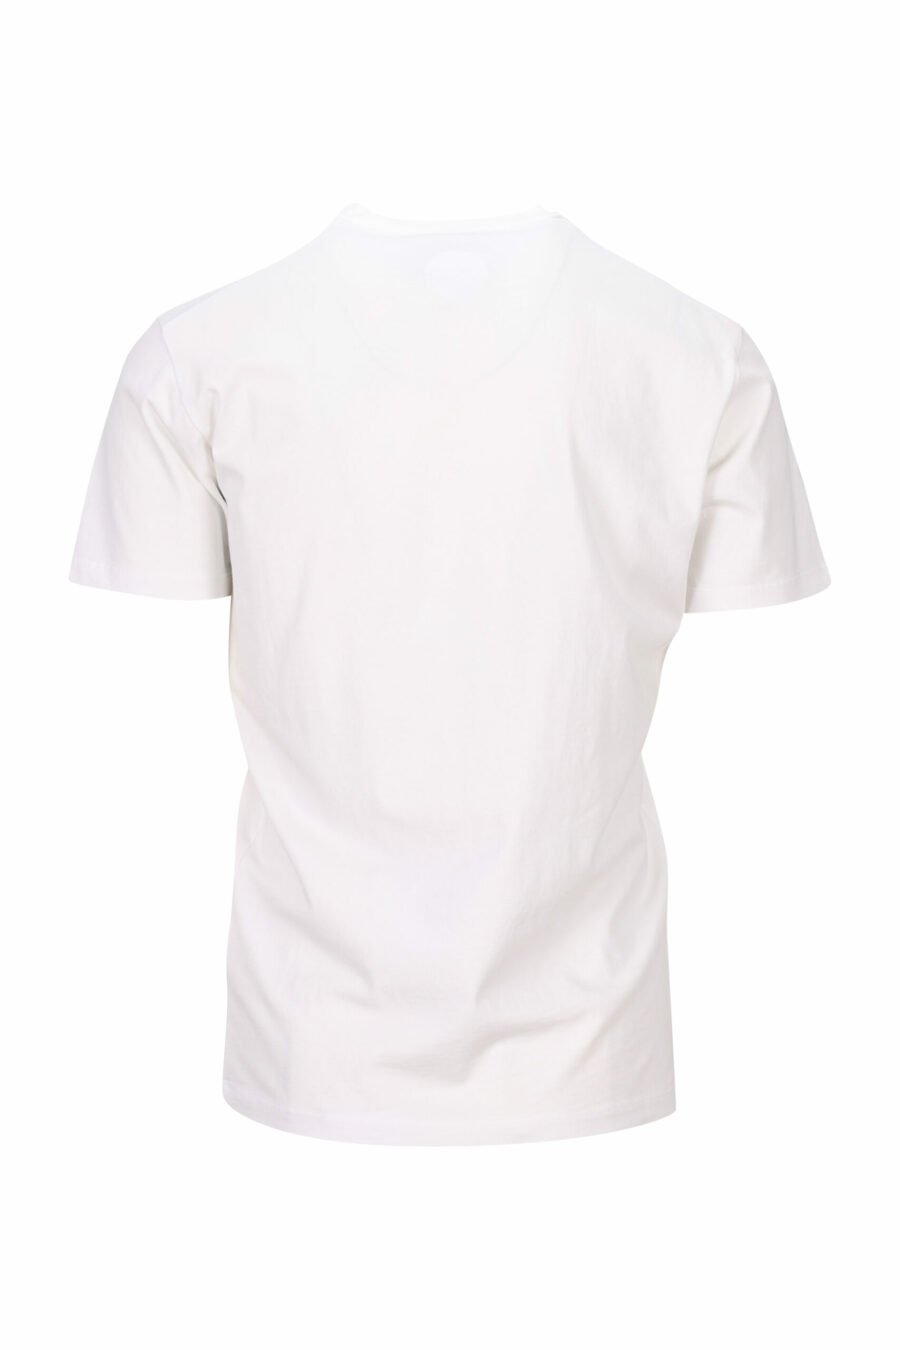 Weißes T-Shirt mit Maxilogo "Kollegenliga" - 8054148504496 1 skaliert